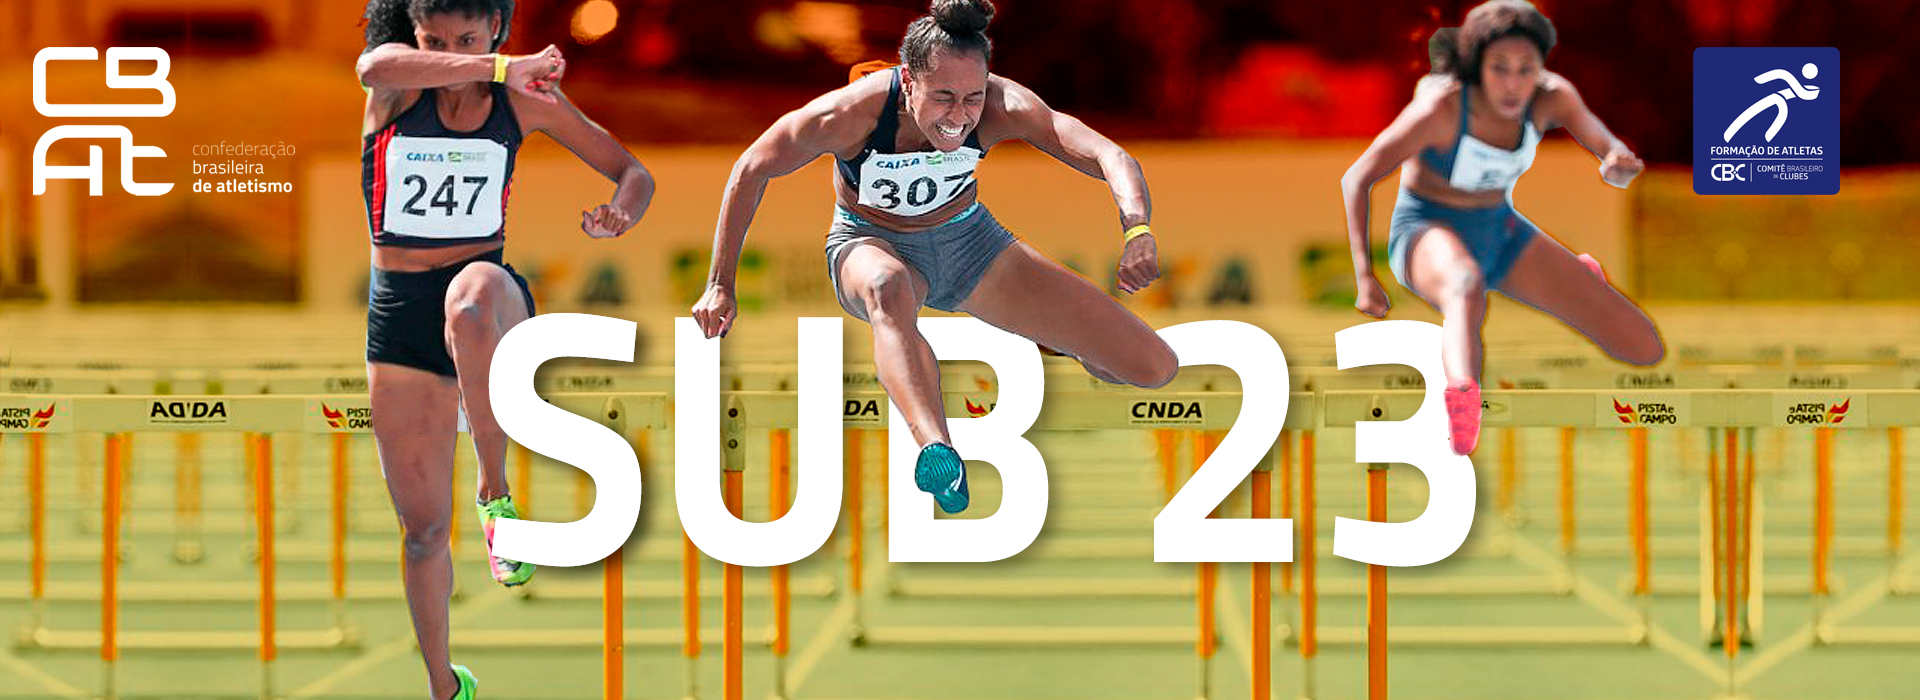 CBI® de Atletismo Sub 23 também vale vaga para o Sul Americano da categoria